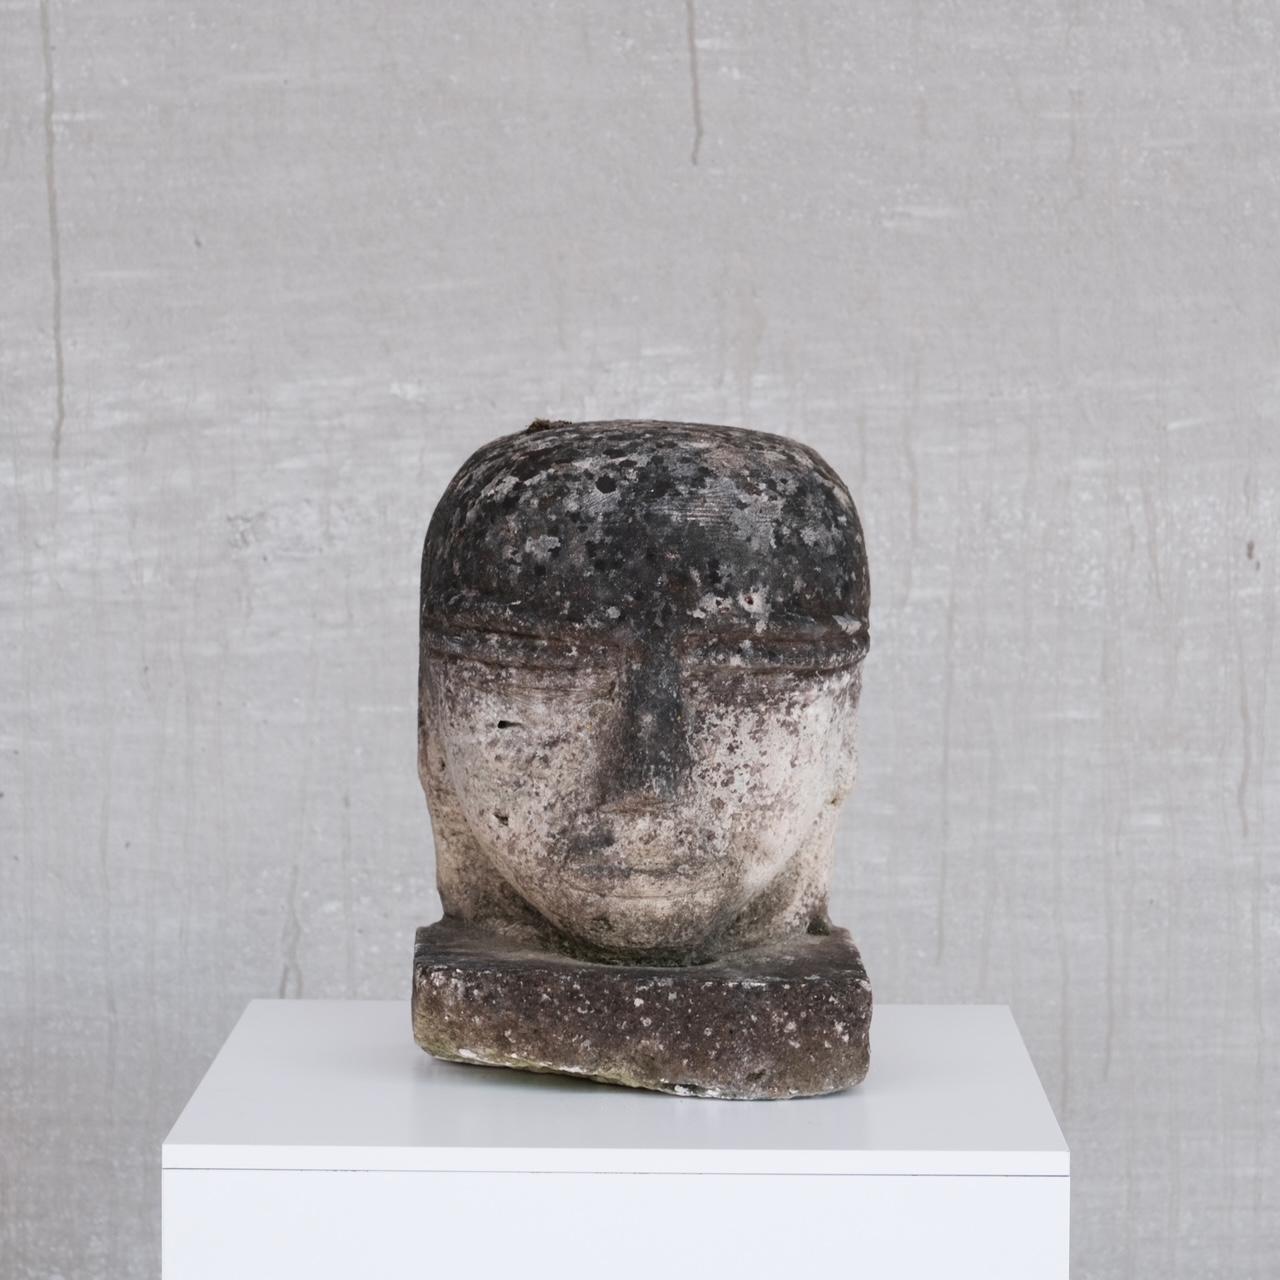 Une tête de pierre inhabituelle, sculptée par un artiste. 

France, c1920s. 

Une paire vendue individuellement. 

Emplacement : Belgique Gallery. 

Dimensions : 35 H x 18 P x 24 L en cm : 35 H x 18 D x 24 W en cm. 

Livraison :